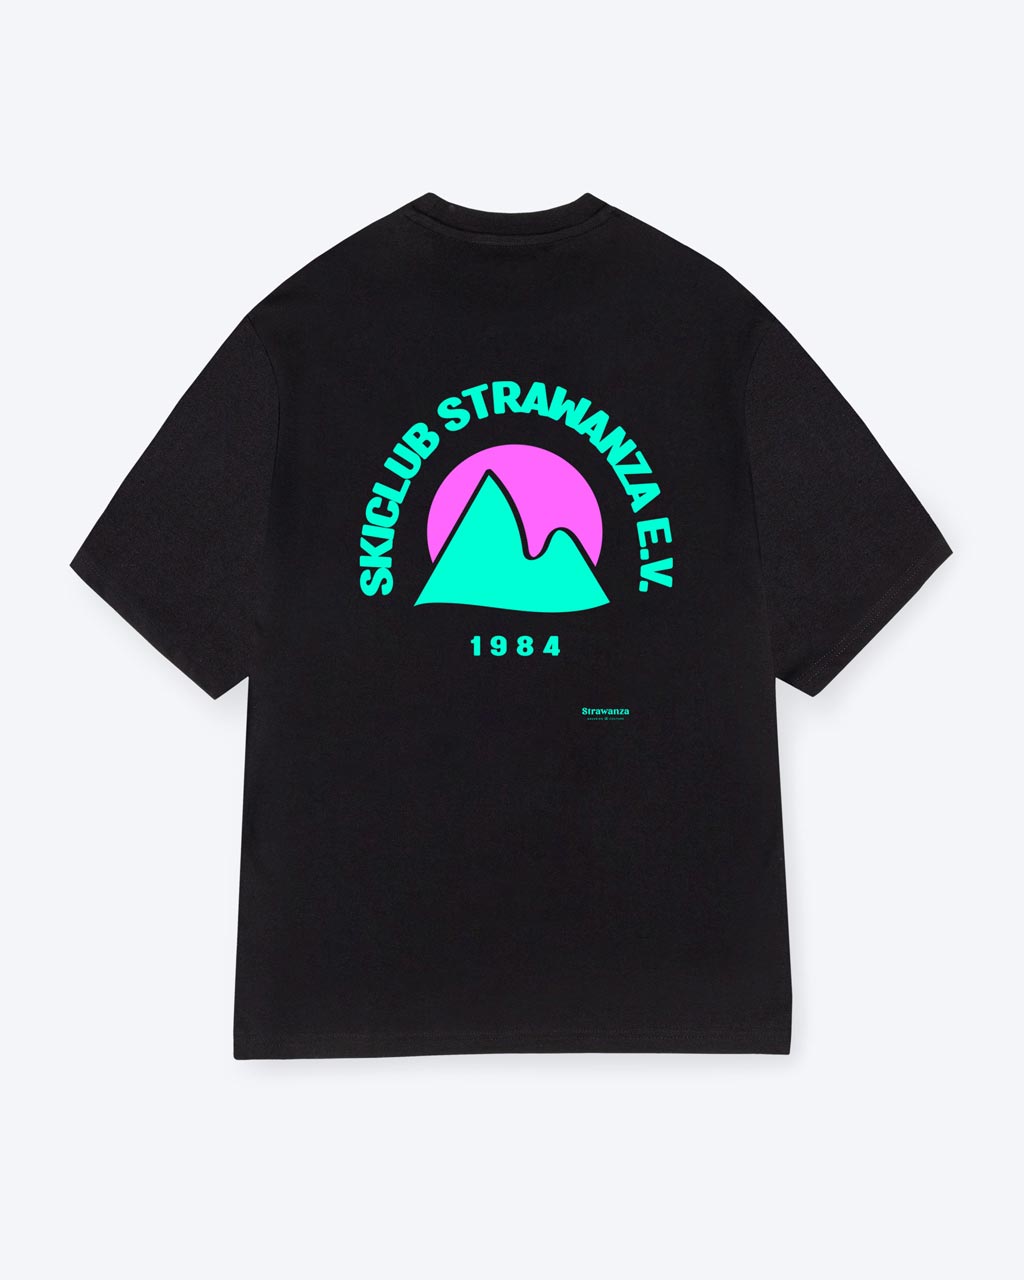 Ein schwarzes T-Shirt mit einem türkisen Bergmotiv und einer pinken Sonne, zudem mit einem türkisen 